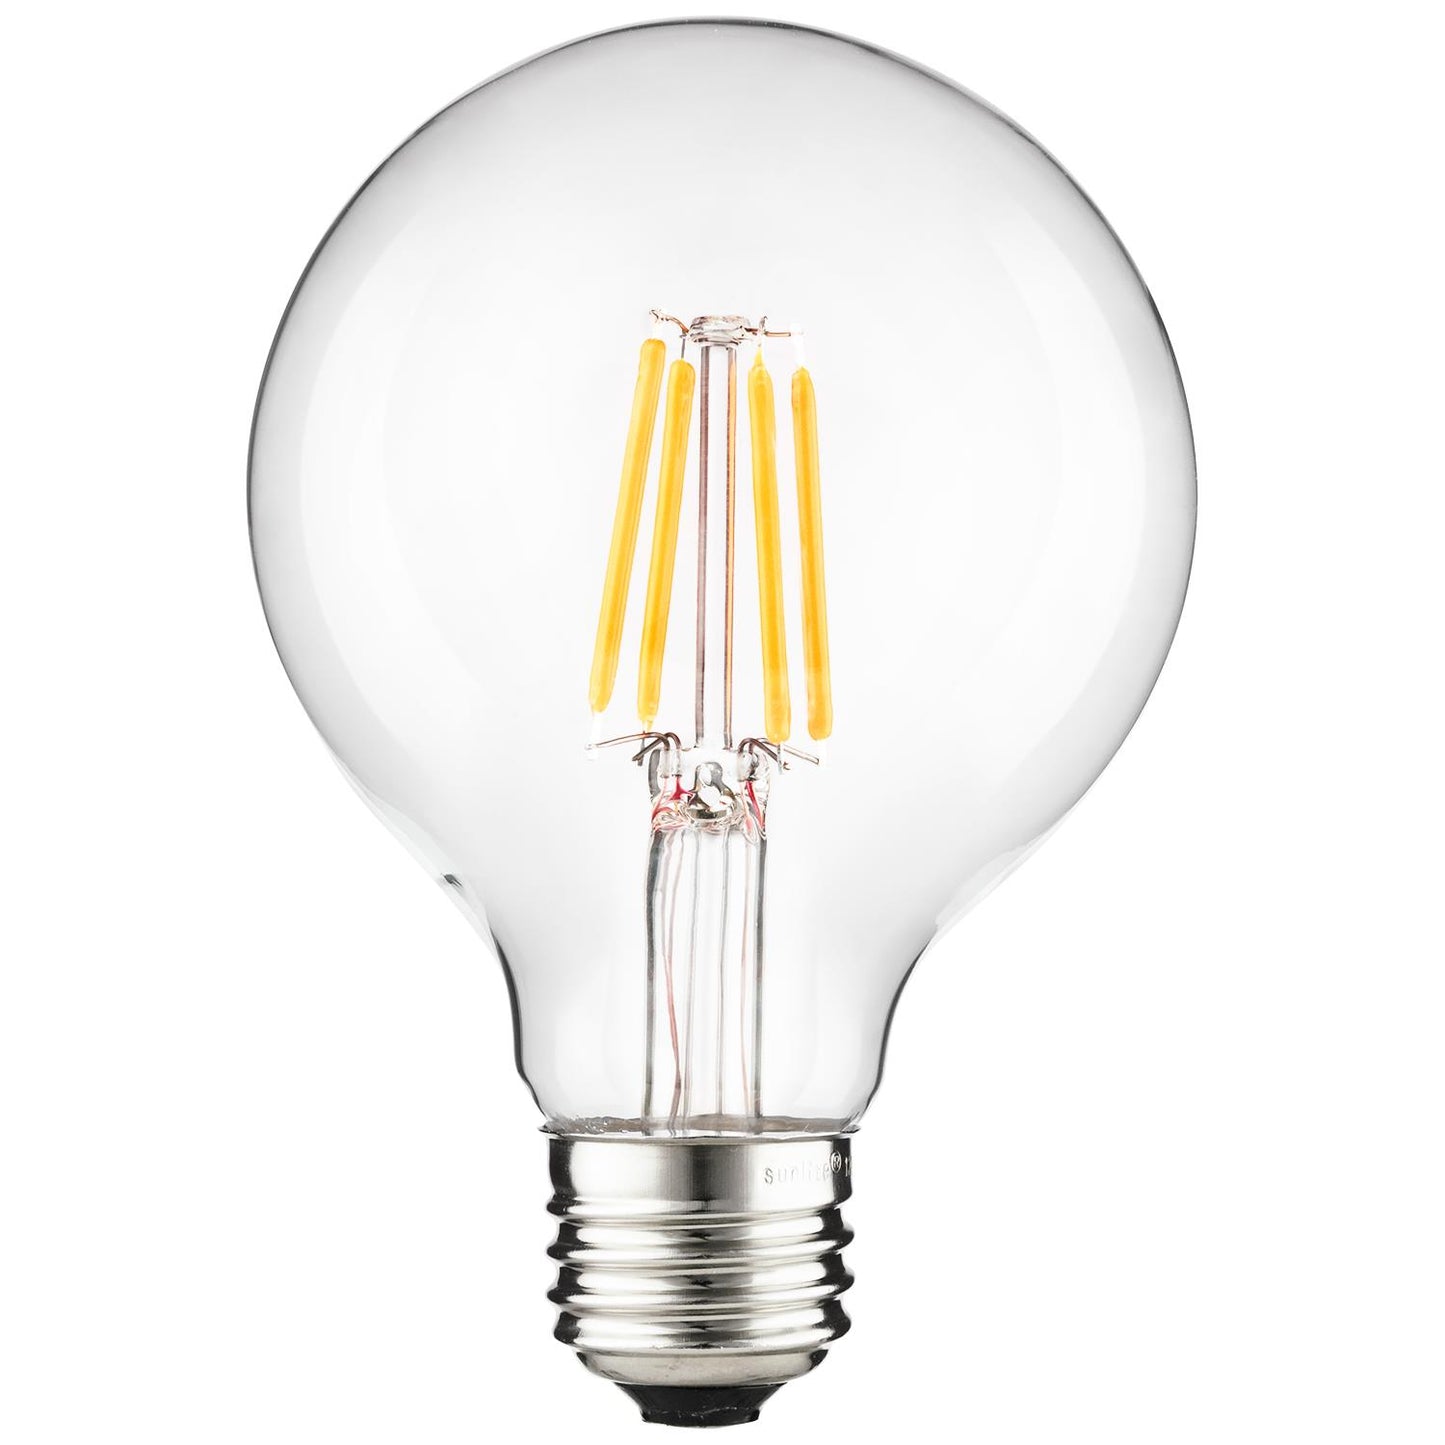 Sunlite 81115 LED Filament G25 Globe 6-Watt (75 Watt Equivalent) Clear Dimmable Light Bulb, 2700K - Warm White